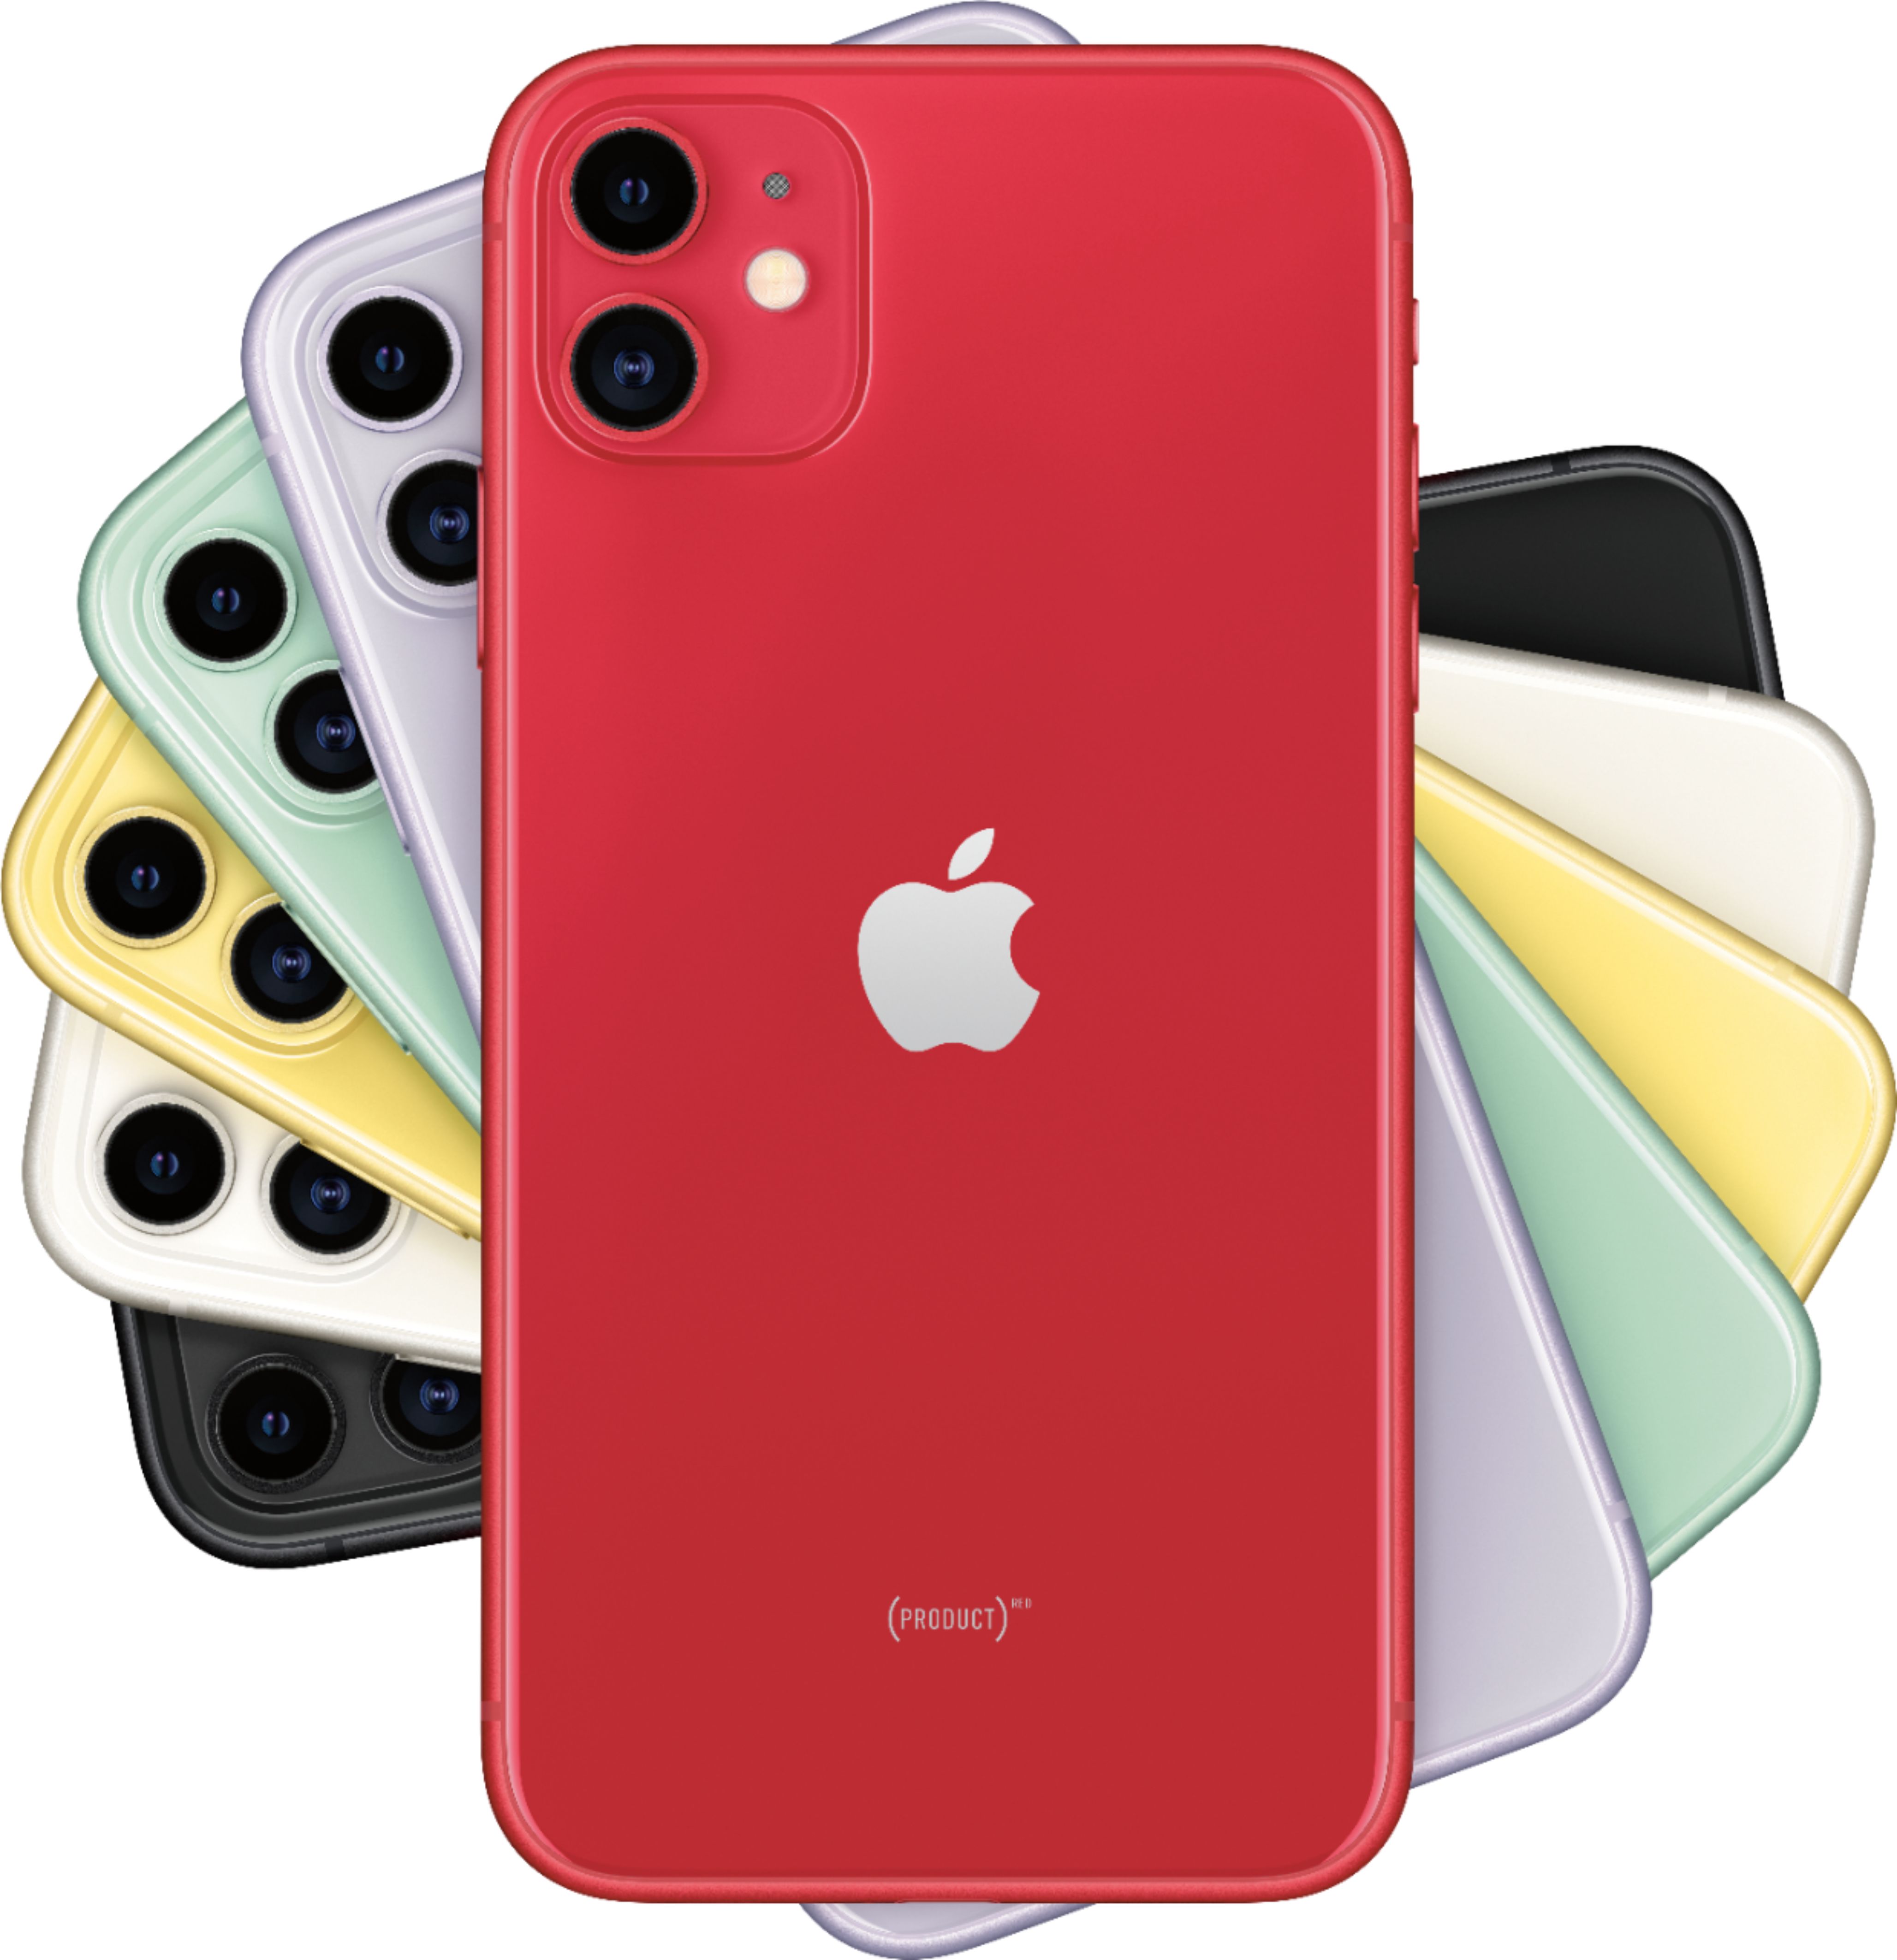 チープ iPhone 11 PRODUCT RED 128 GB au sushitai.com.mx